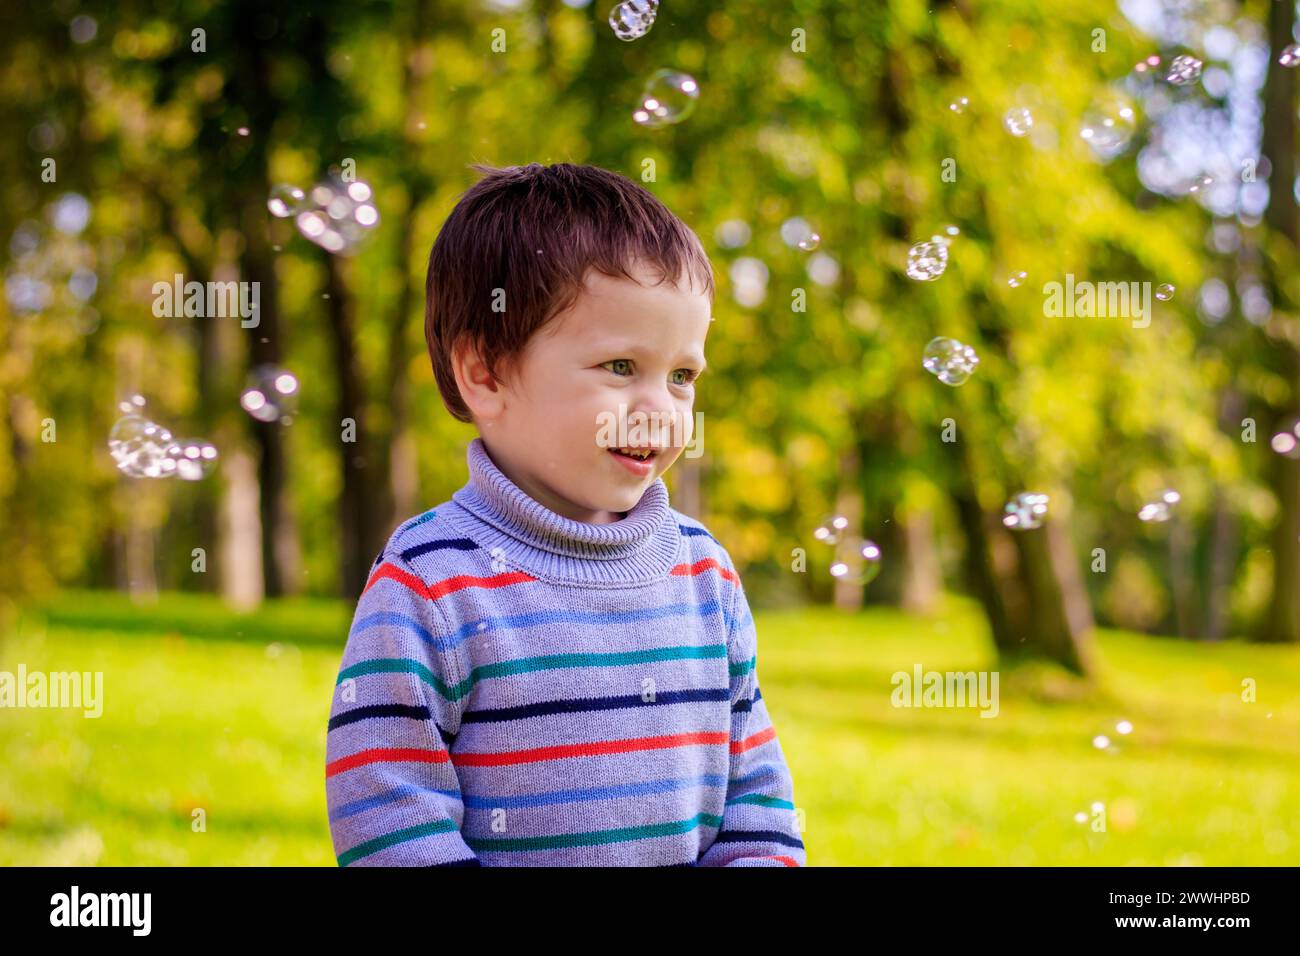 Porträt eines kleinen Jungen auf einem Grashintergrund. Kleiner Junge in einem Pullover. Porträt eines kleinen Jungen auf einem Grashintergrund. Kleiner Junge in einem Pullover Stockfoto